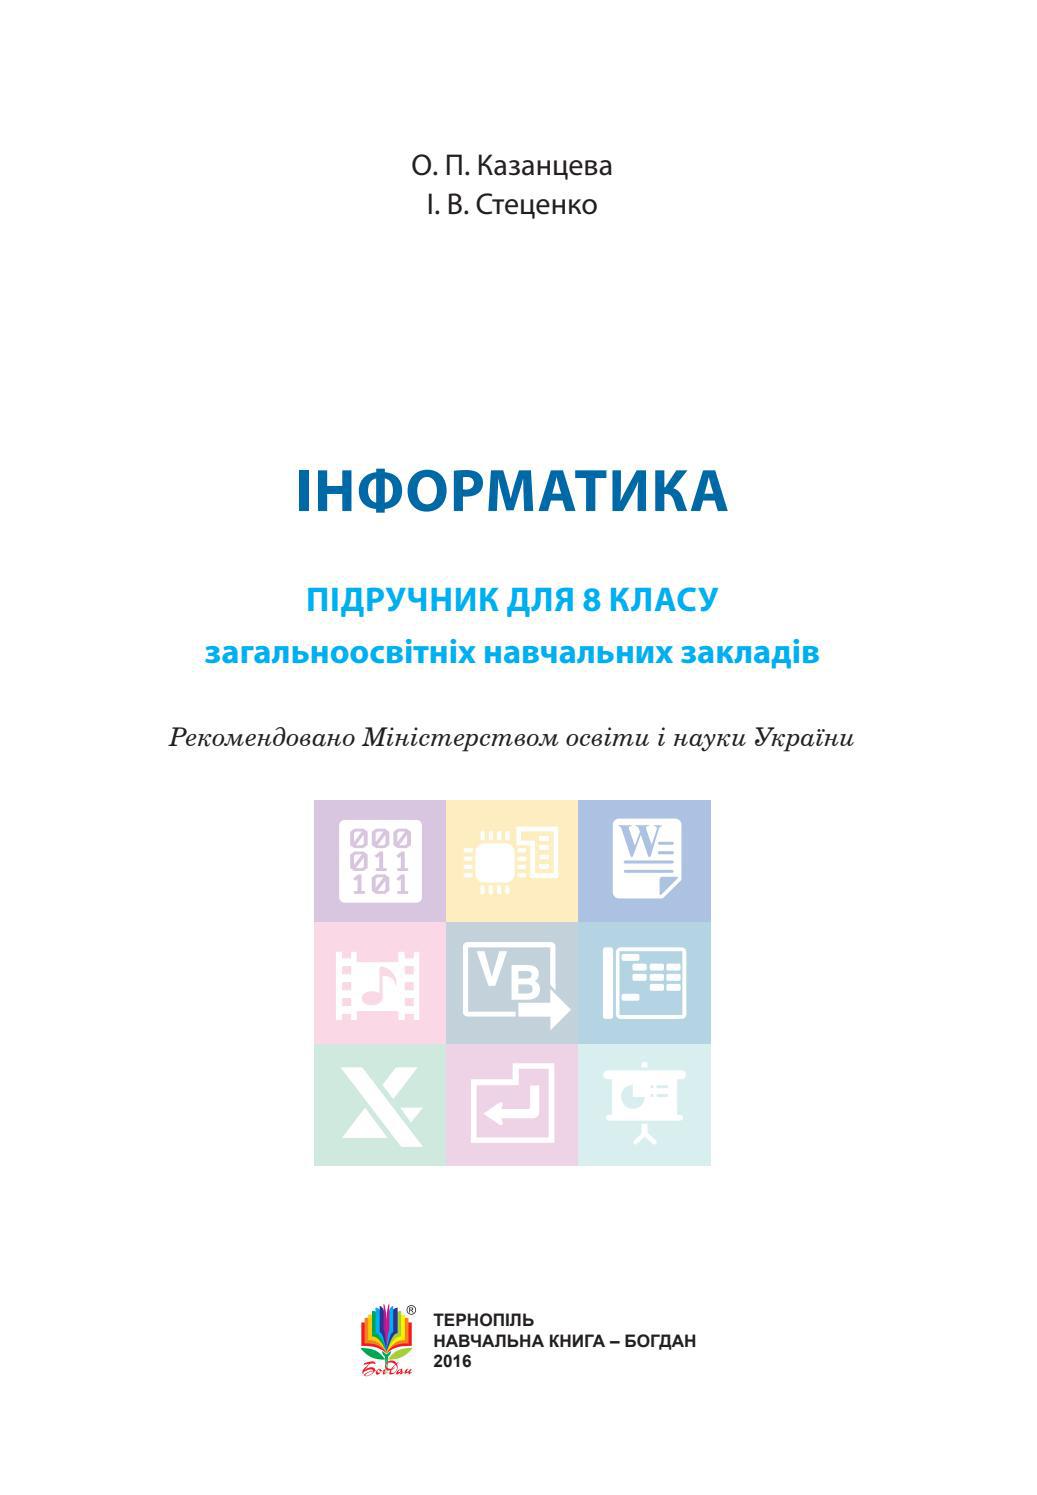 Інформатика 8 клас Казанцева 2016